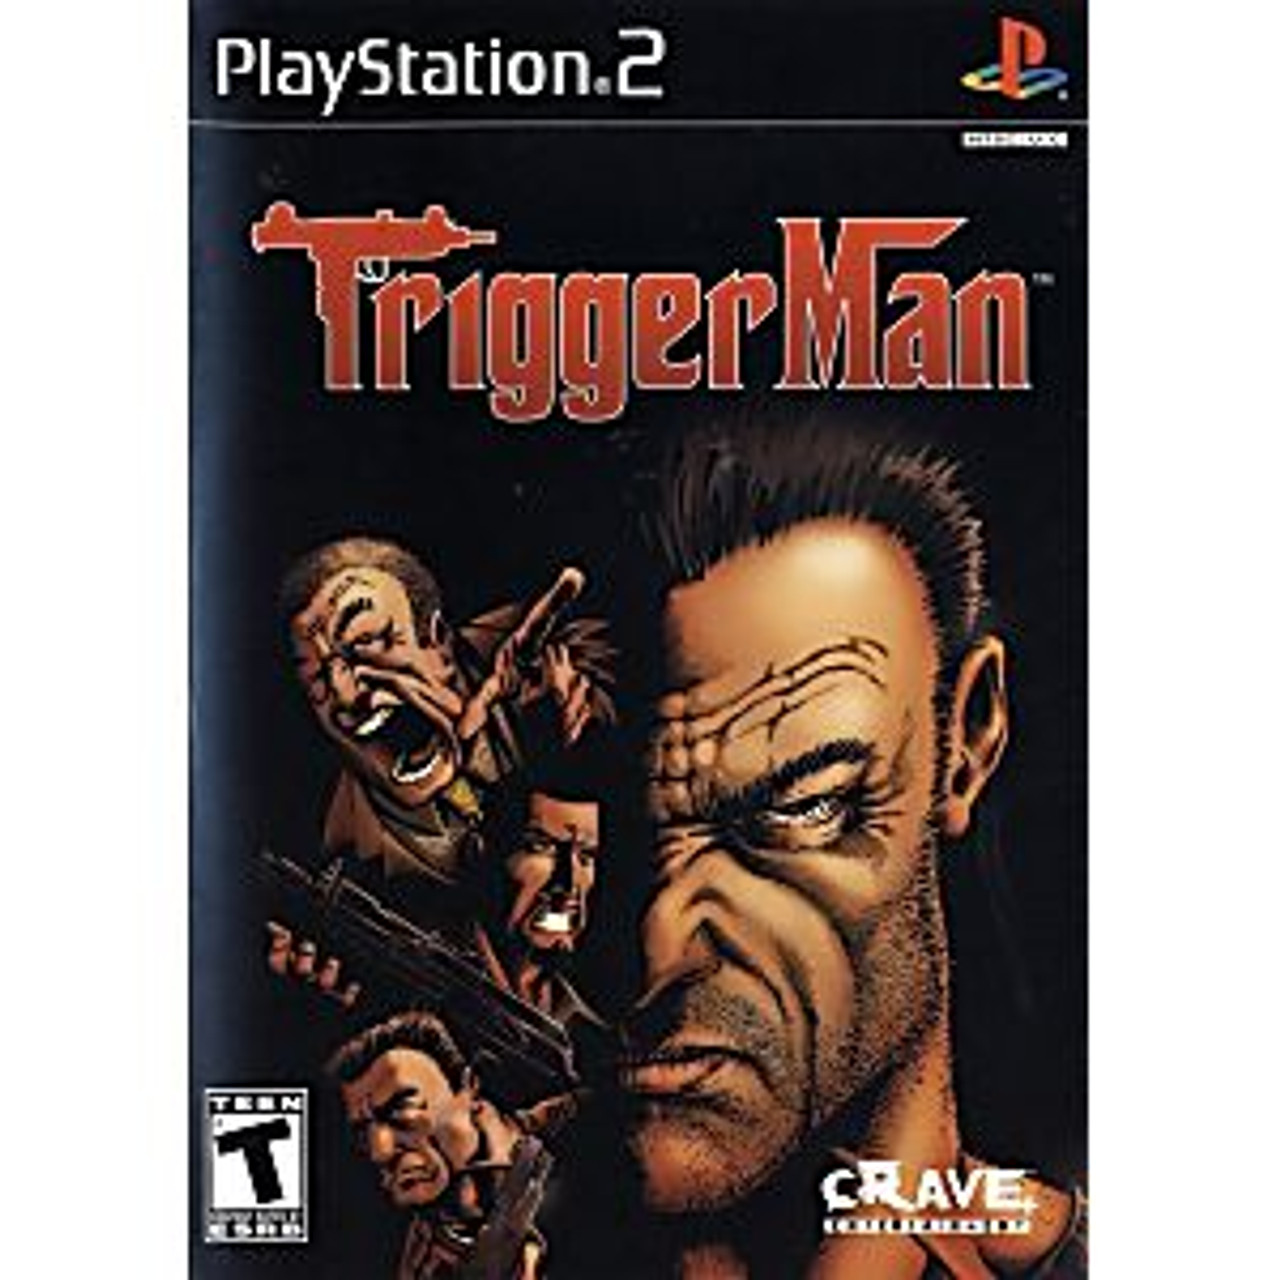 TRIGGER MAN [T] - PS2